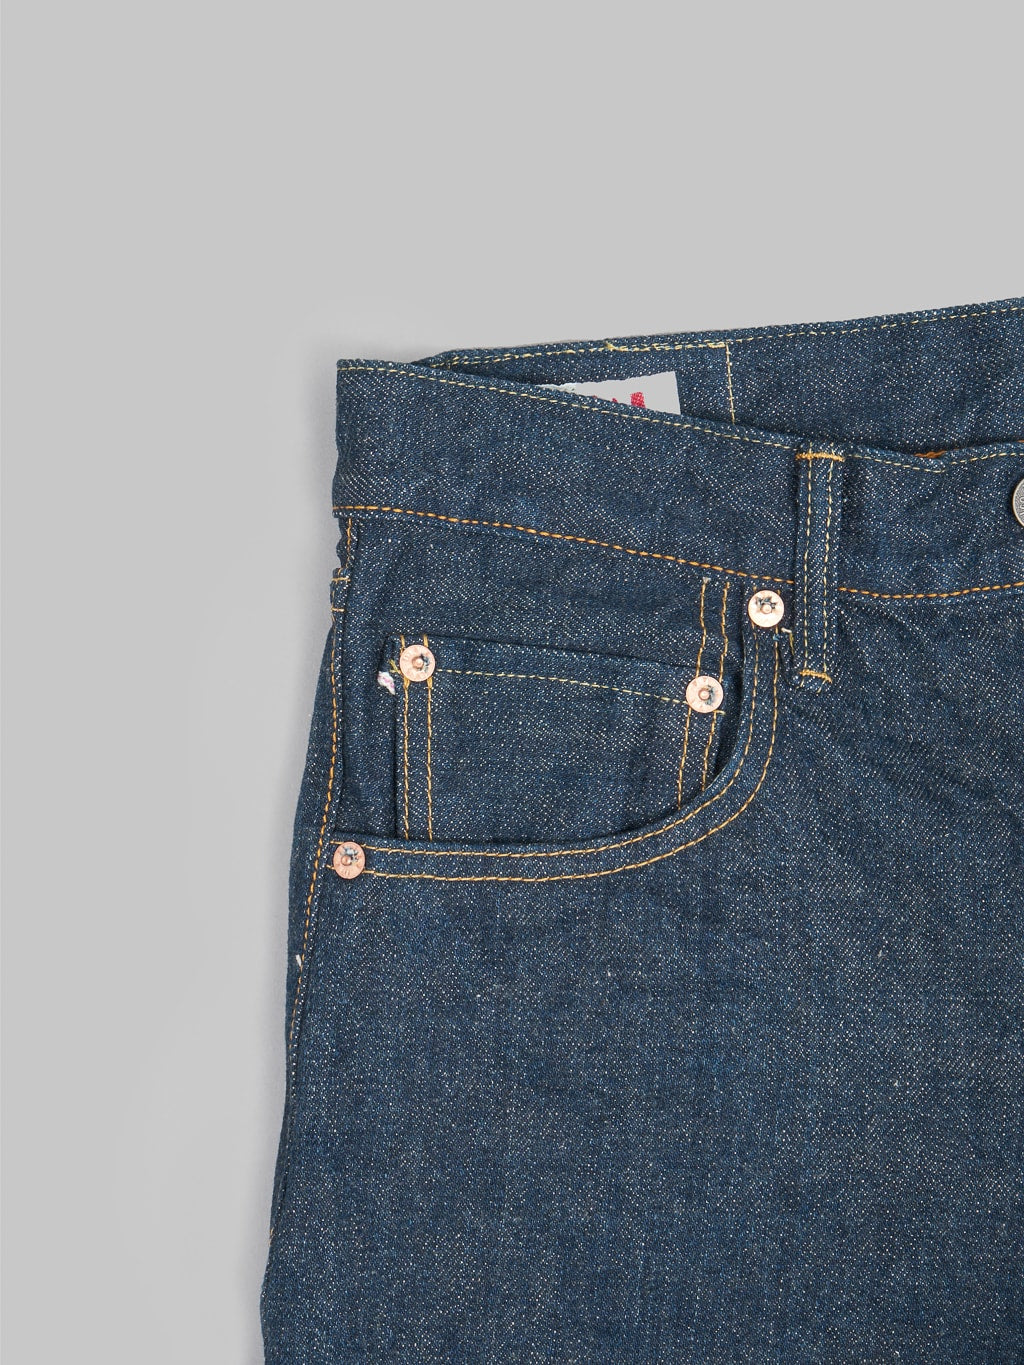 ONI Denim 902 Ishikawadai 15oz Jeans pocket rivets